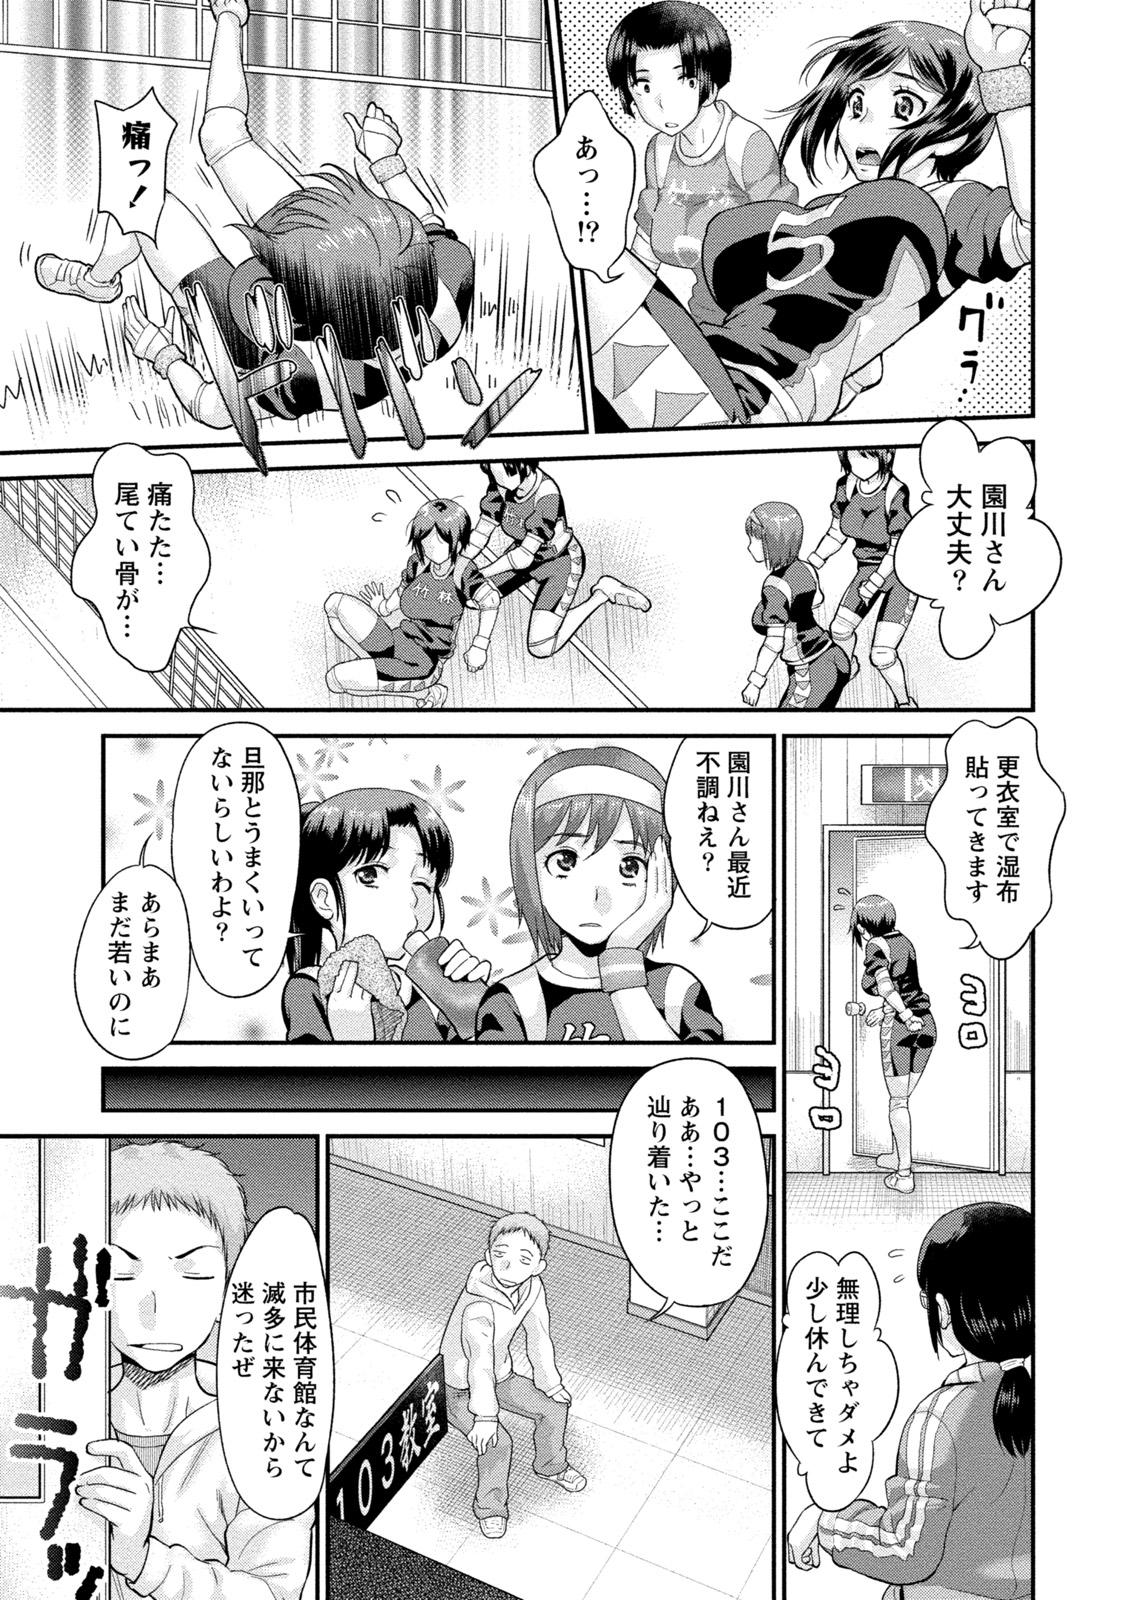 She Hitozuma na Boku no Yome Cartoon - Page 8